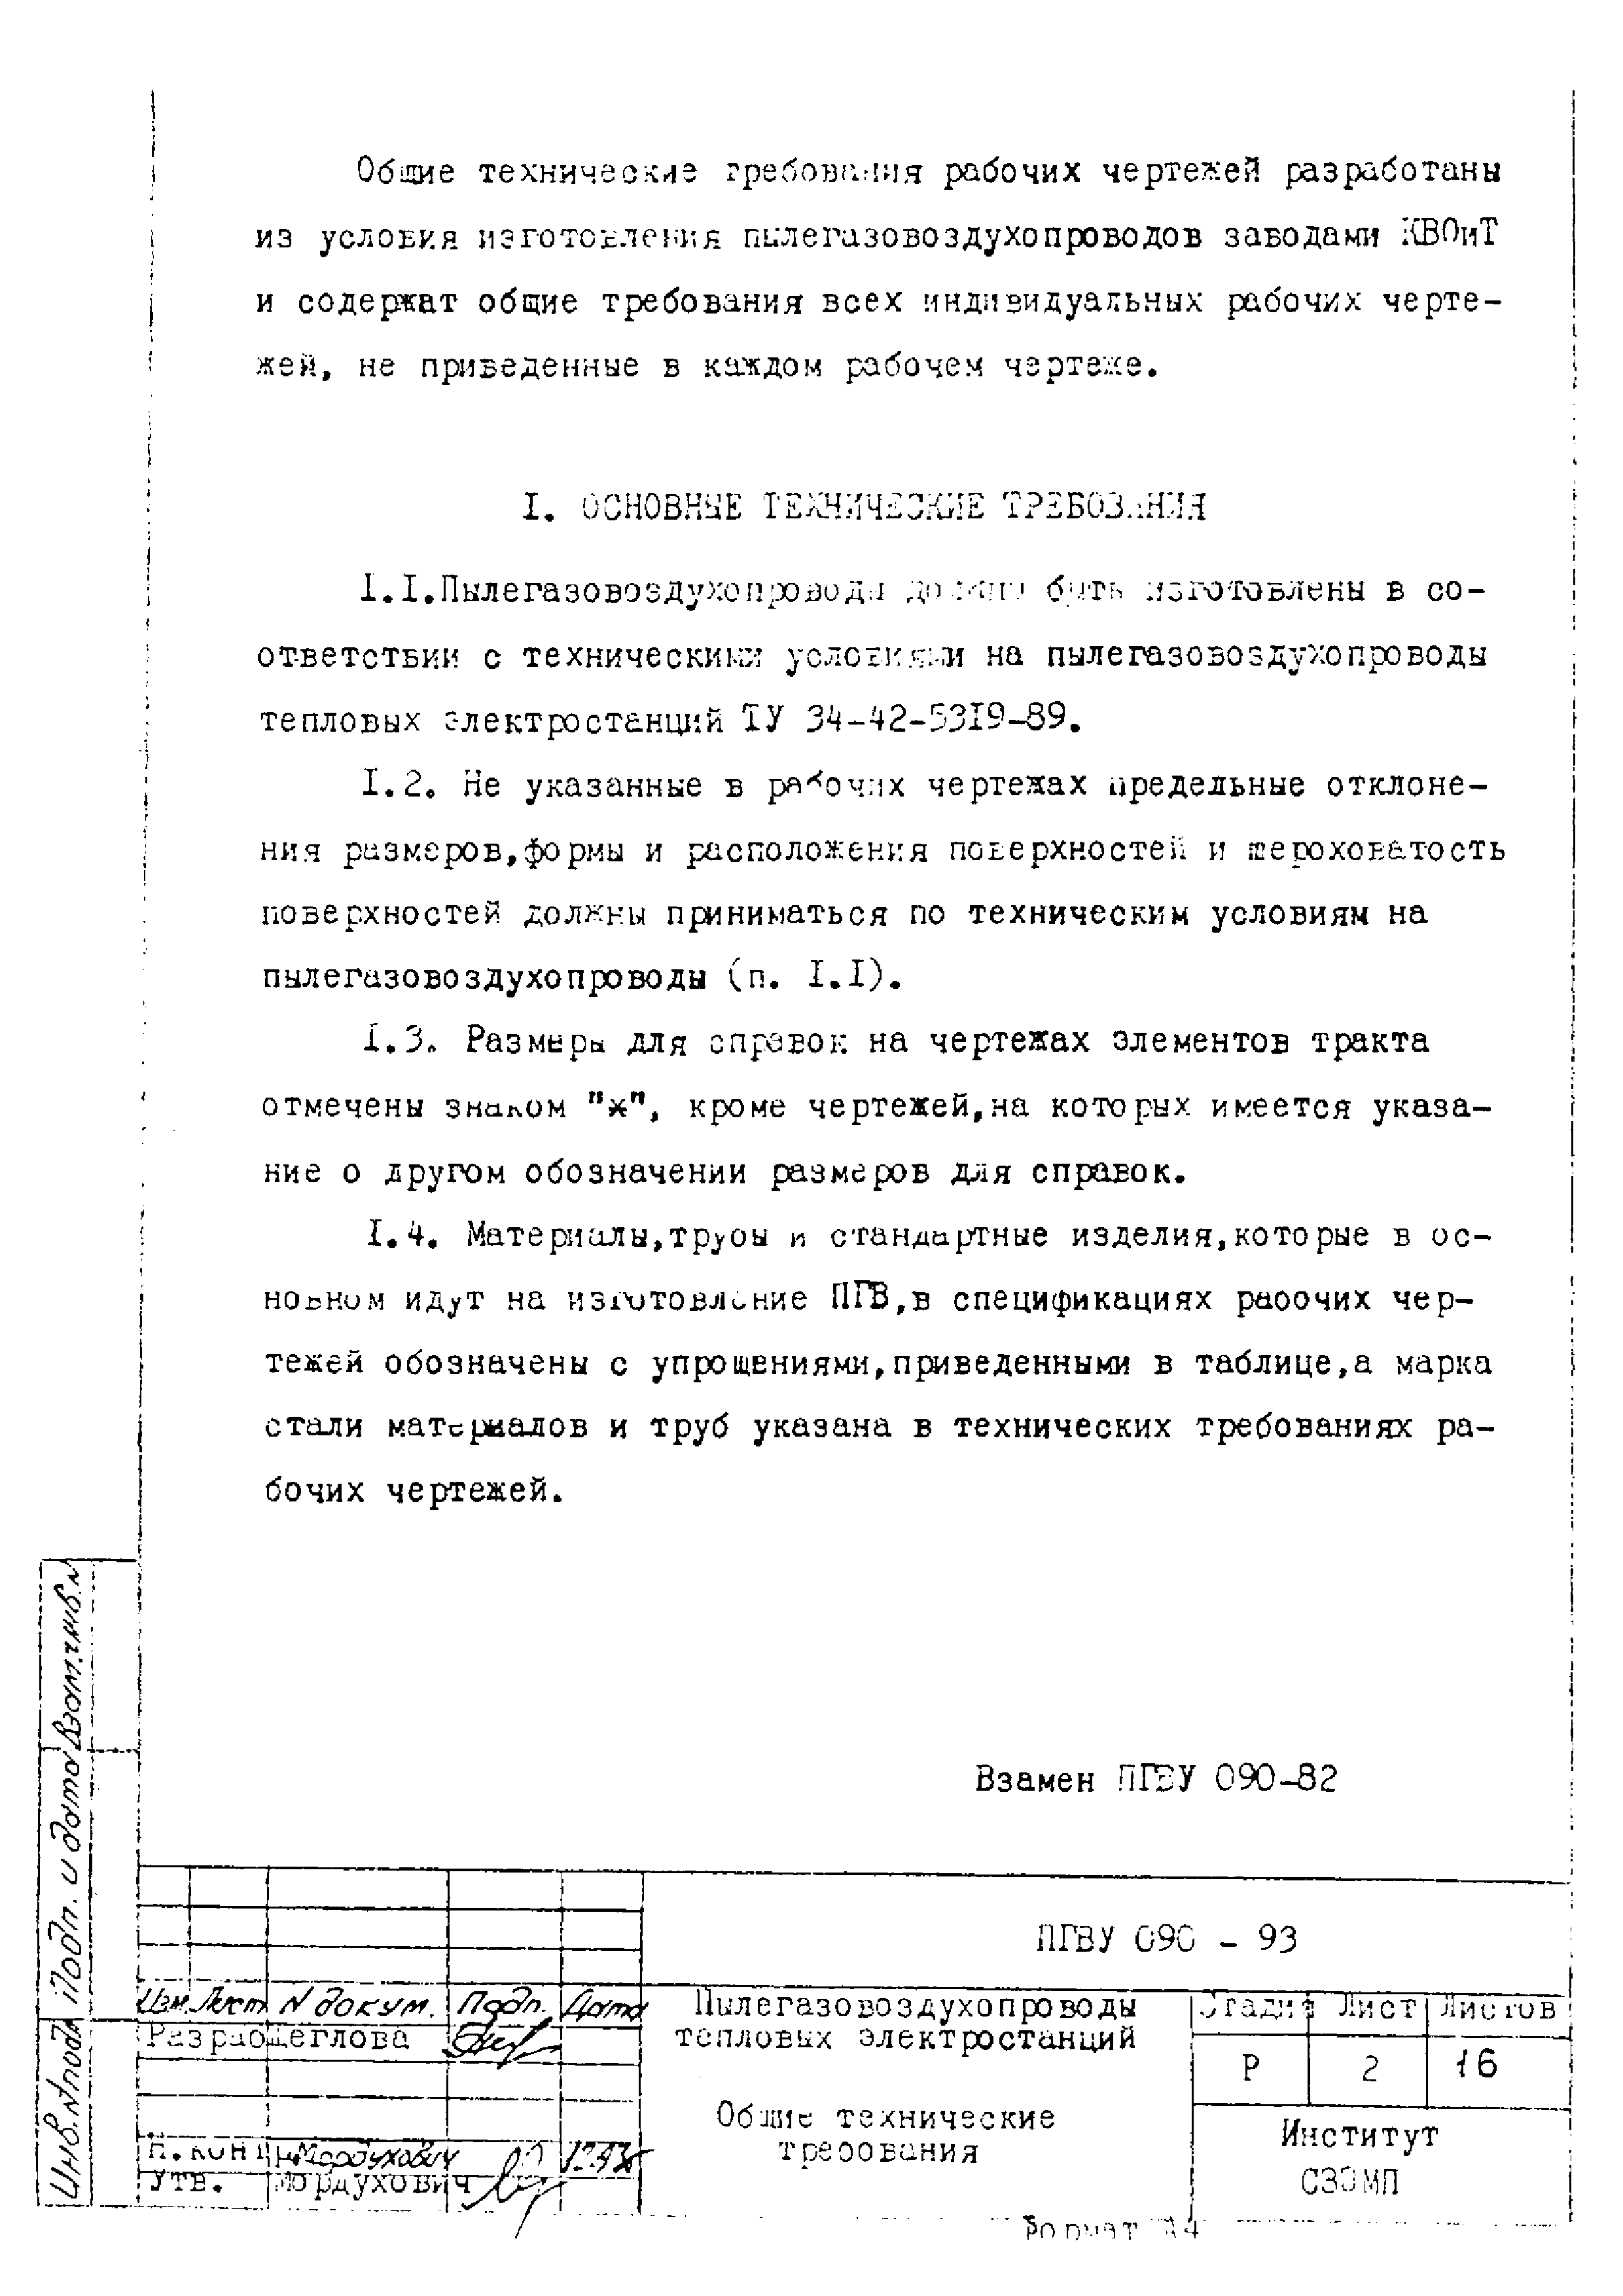 ПГВУ 090-93